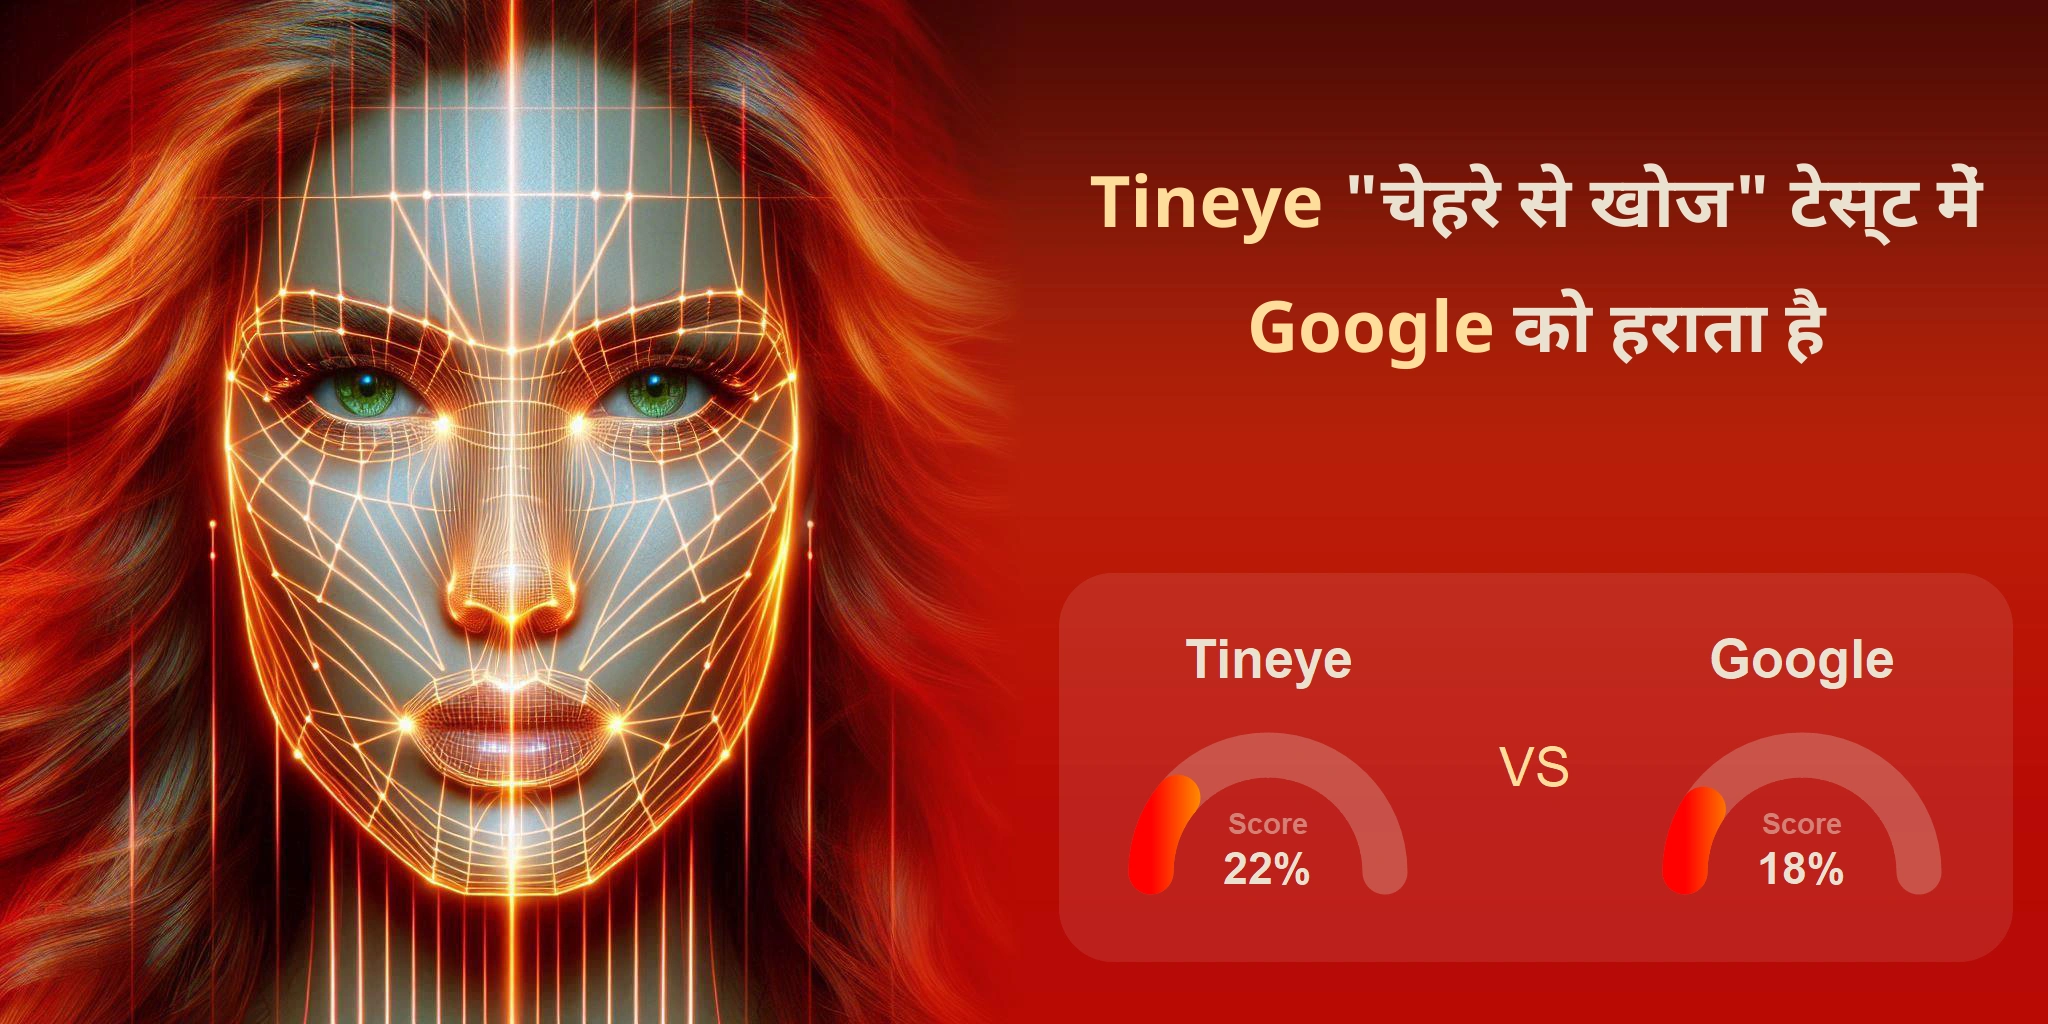 चेहरे की खोज के लिए कौन बेहतर है: <br>Google या Tineye?